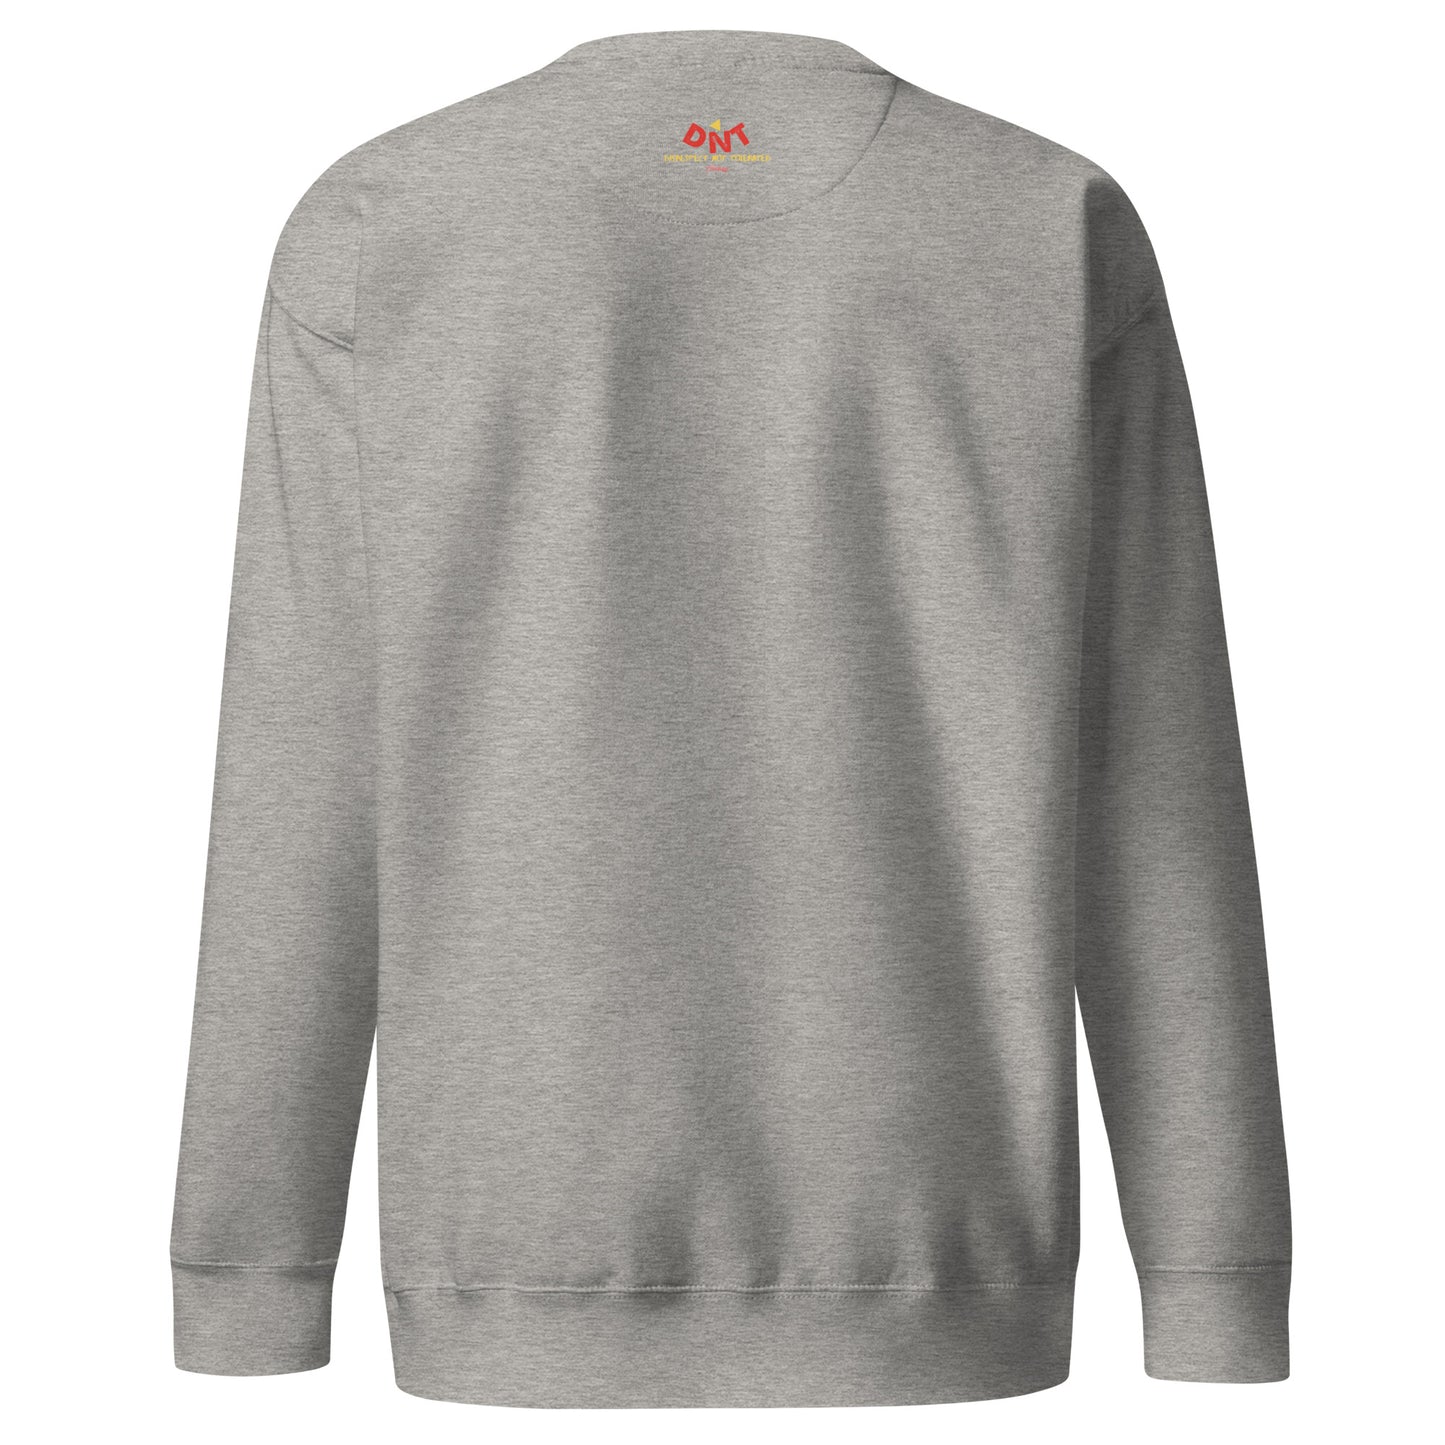 Creations United -Unisex Premium Sweatshirt